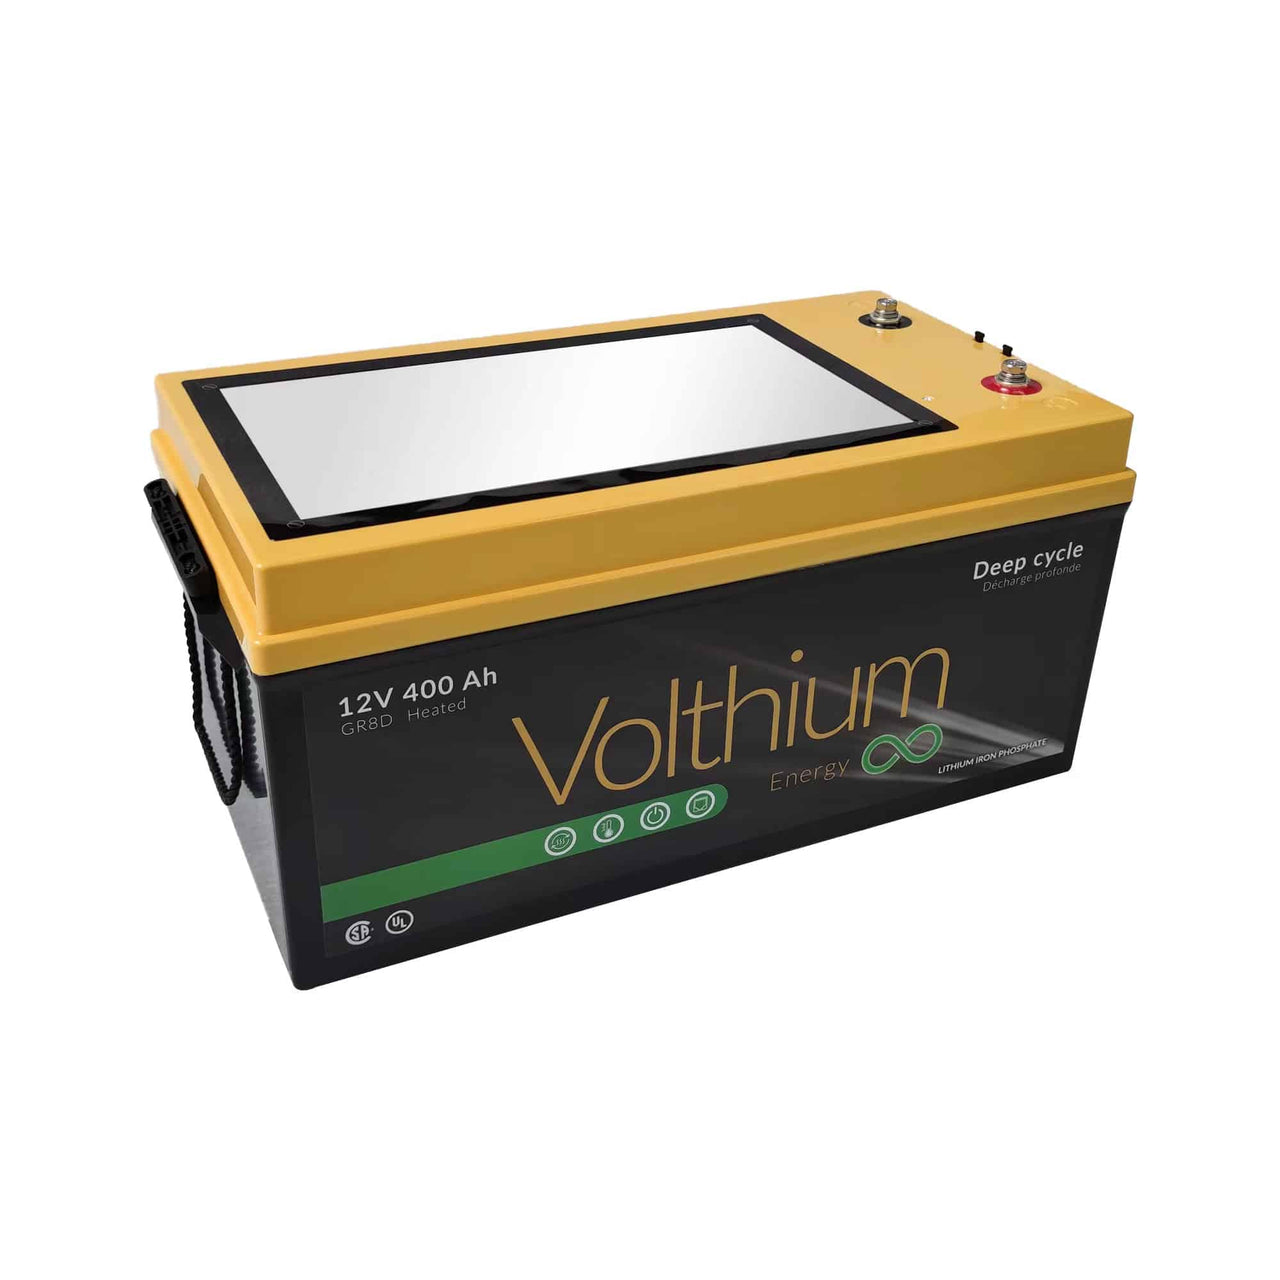 Volthium - Batterie 12V 400AH 8D - 12.8-400-G8DY